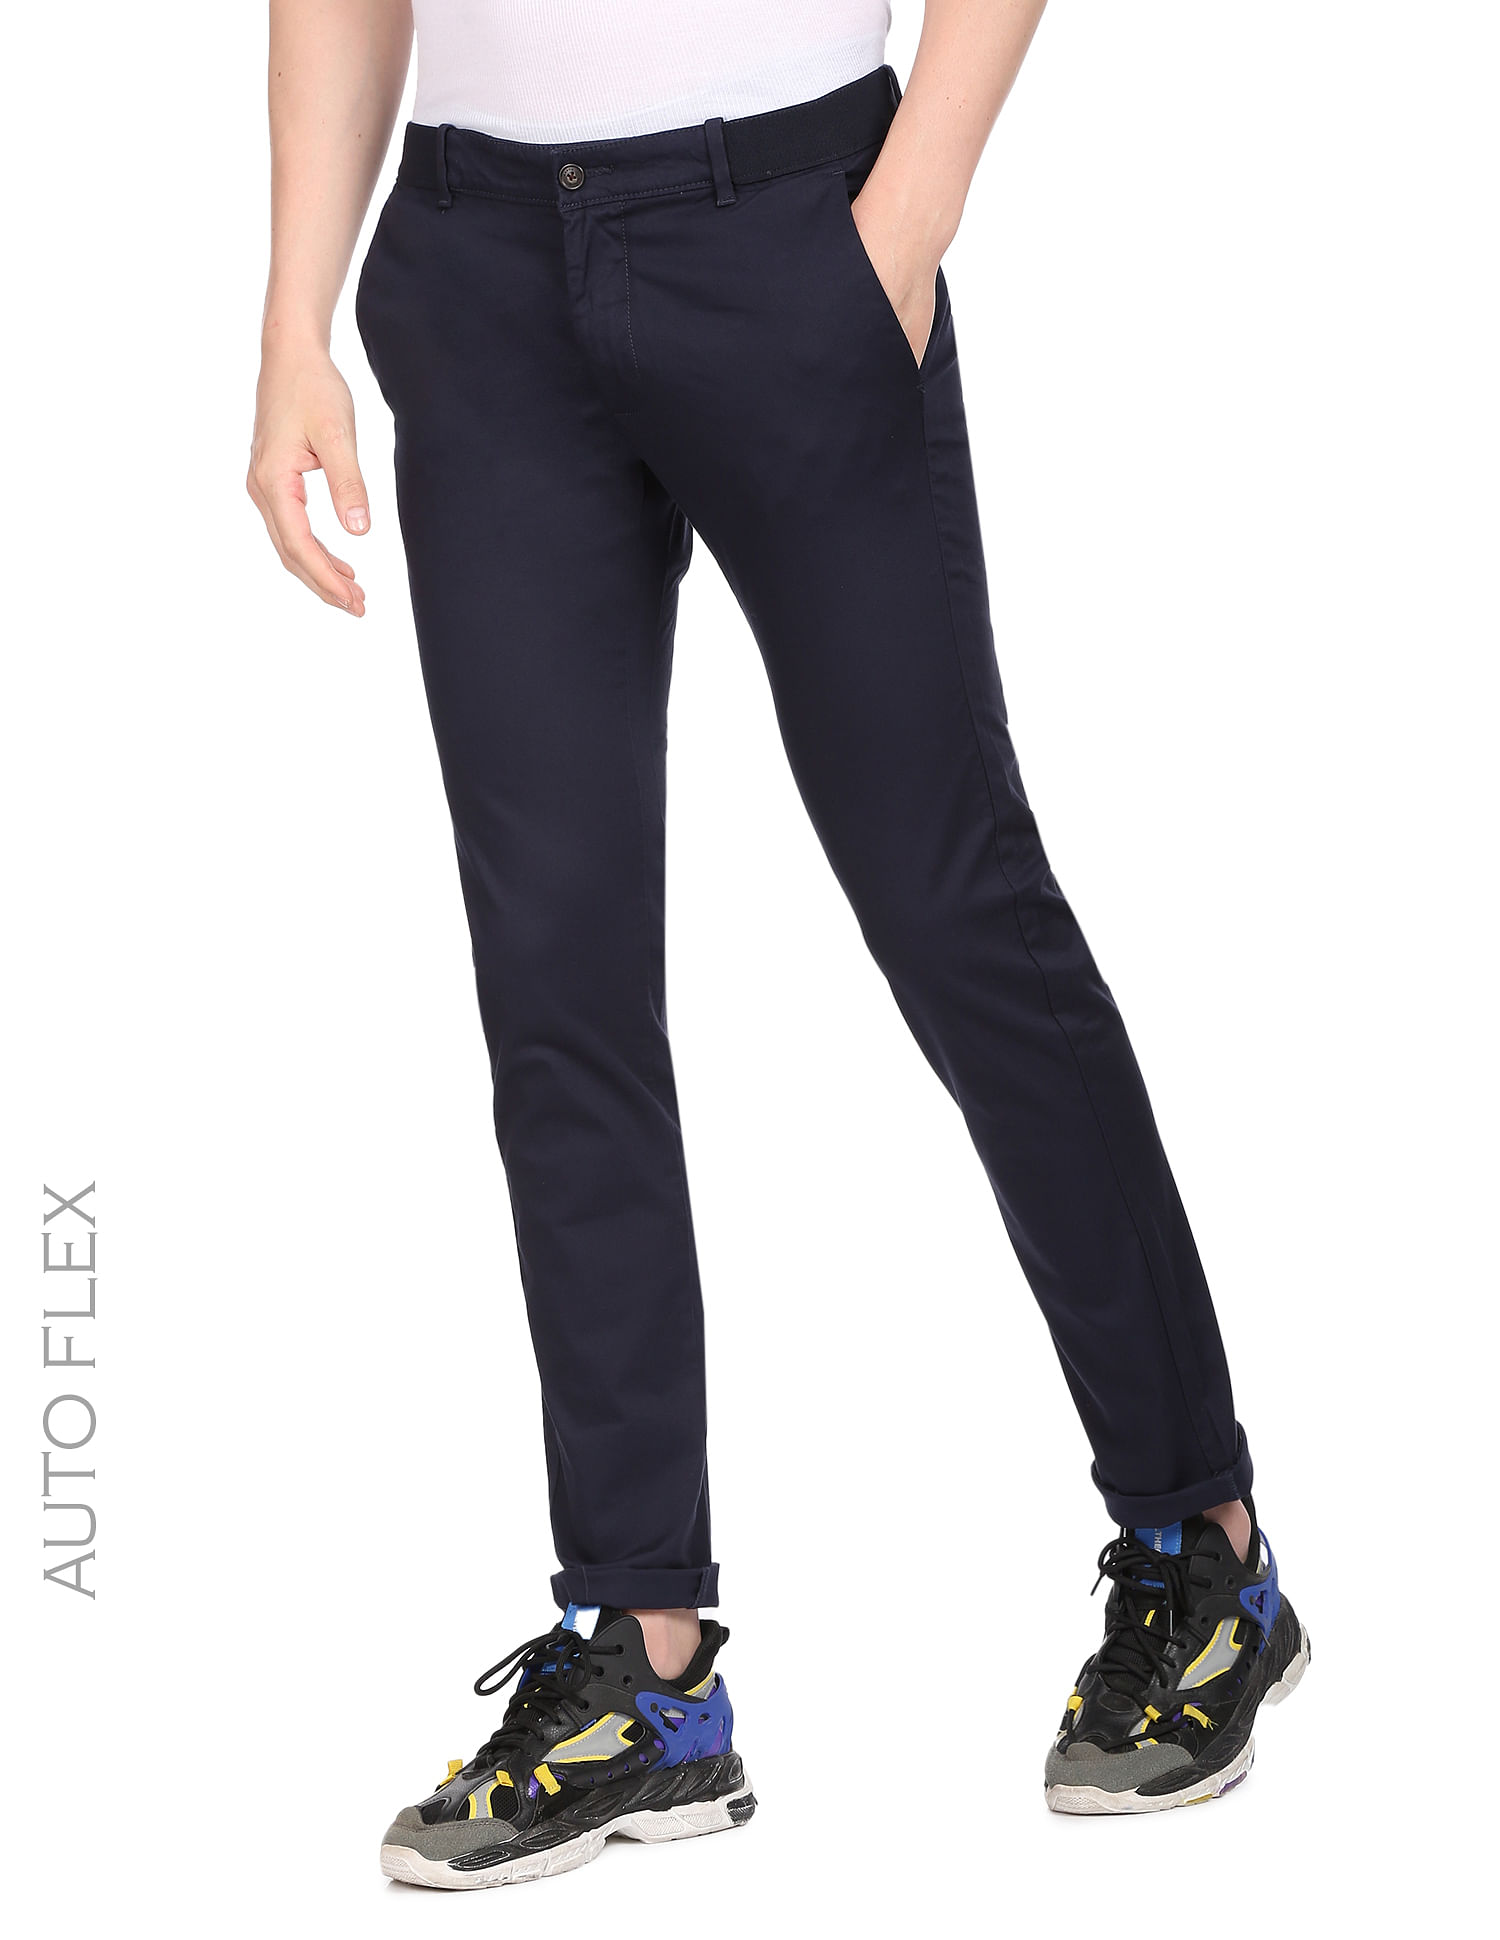 Buy Blue Trousers  Pants for Men by SPORTS 52 WEAR Online  Ajiocom